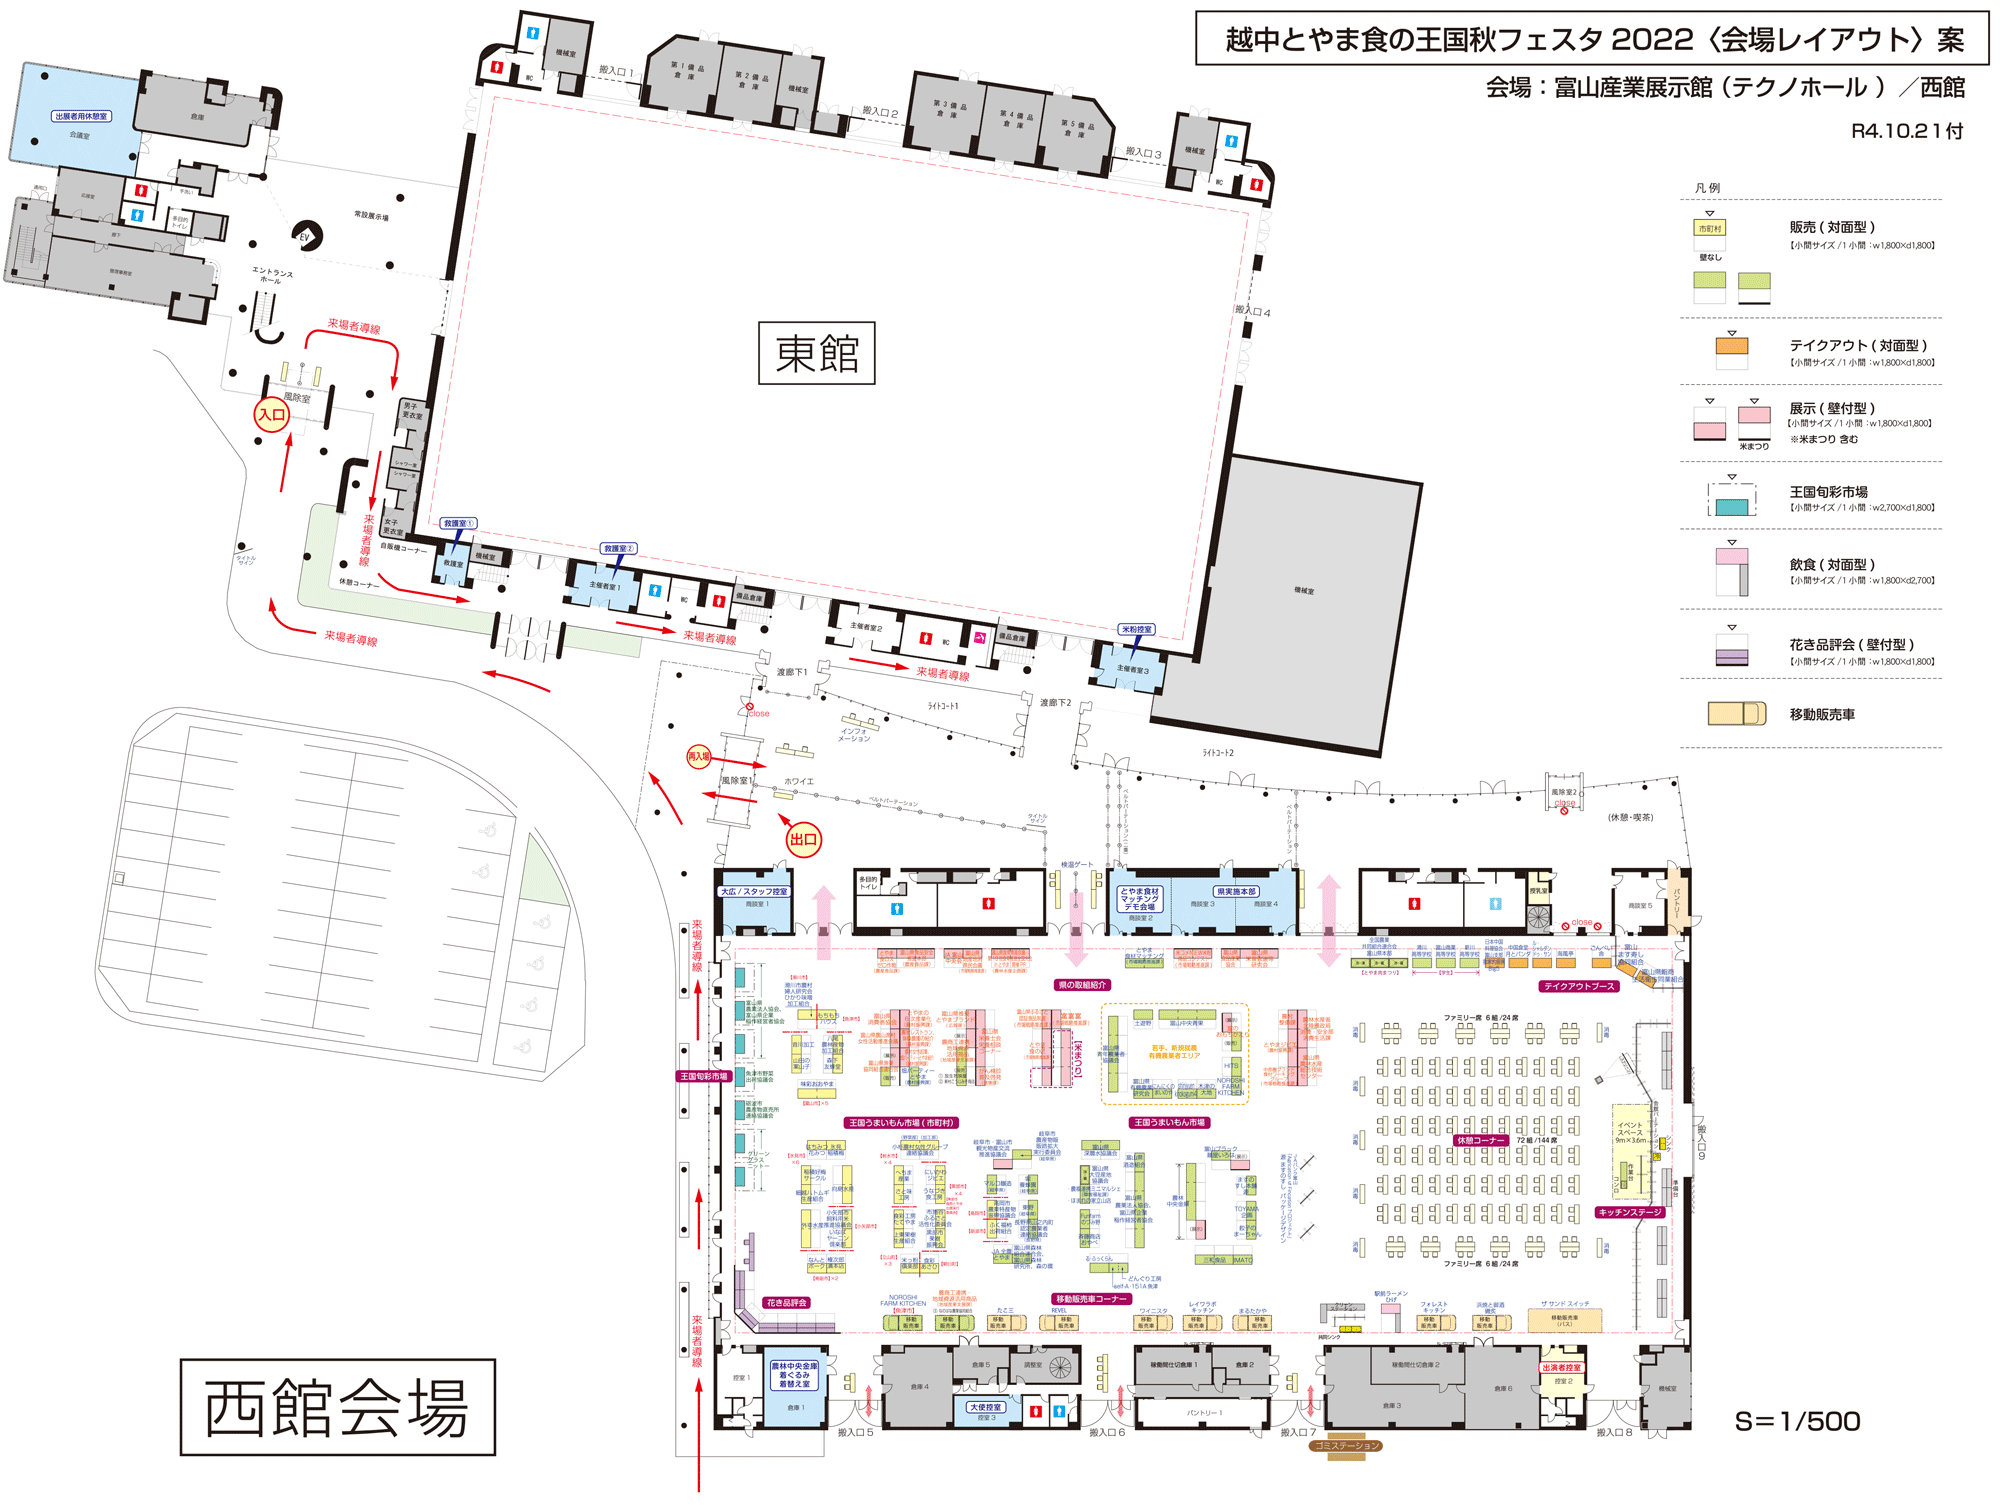 テクノホールで開催される「越中とやま食の王国秋フェスタ2022」の会場マップ1